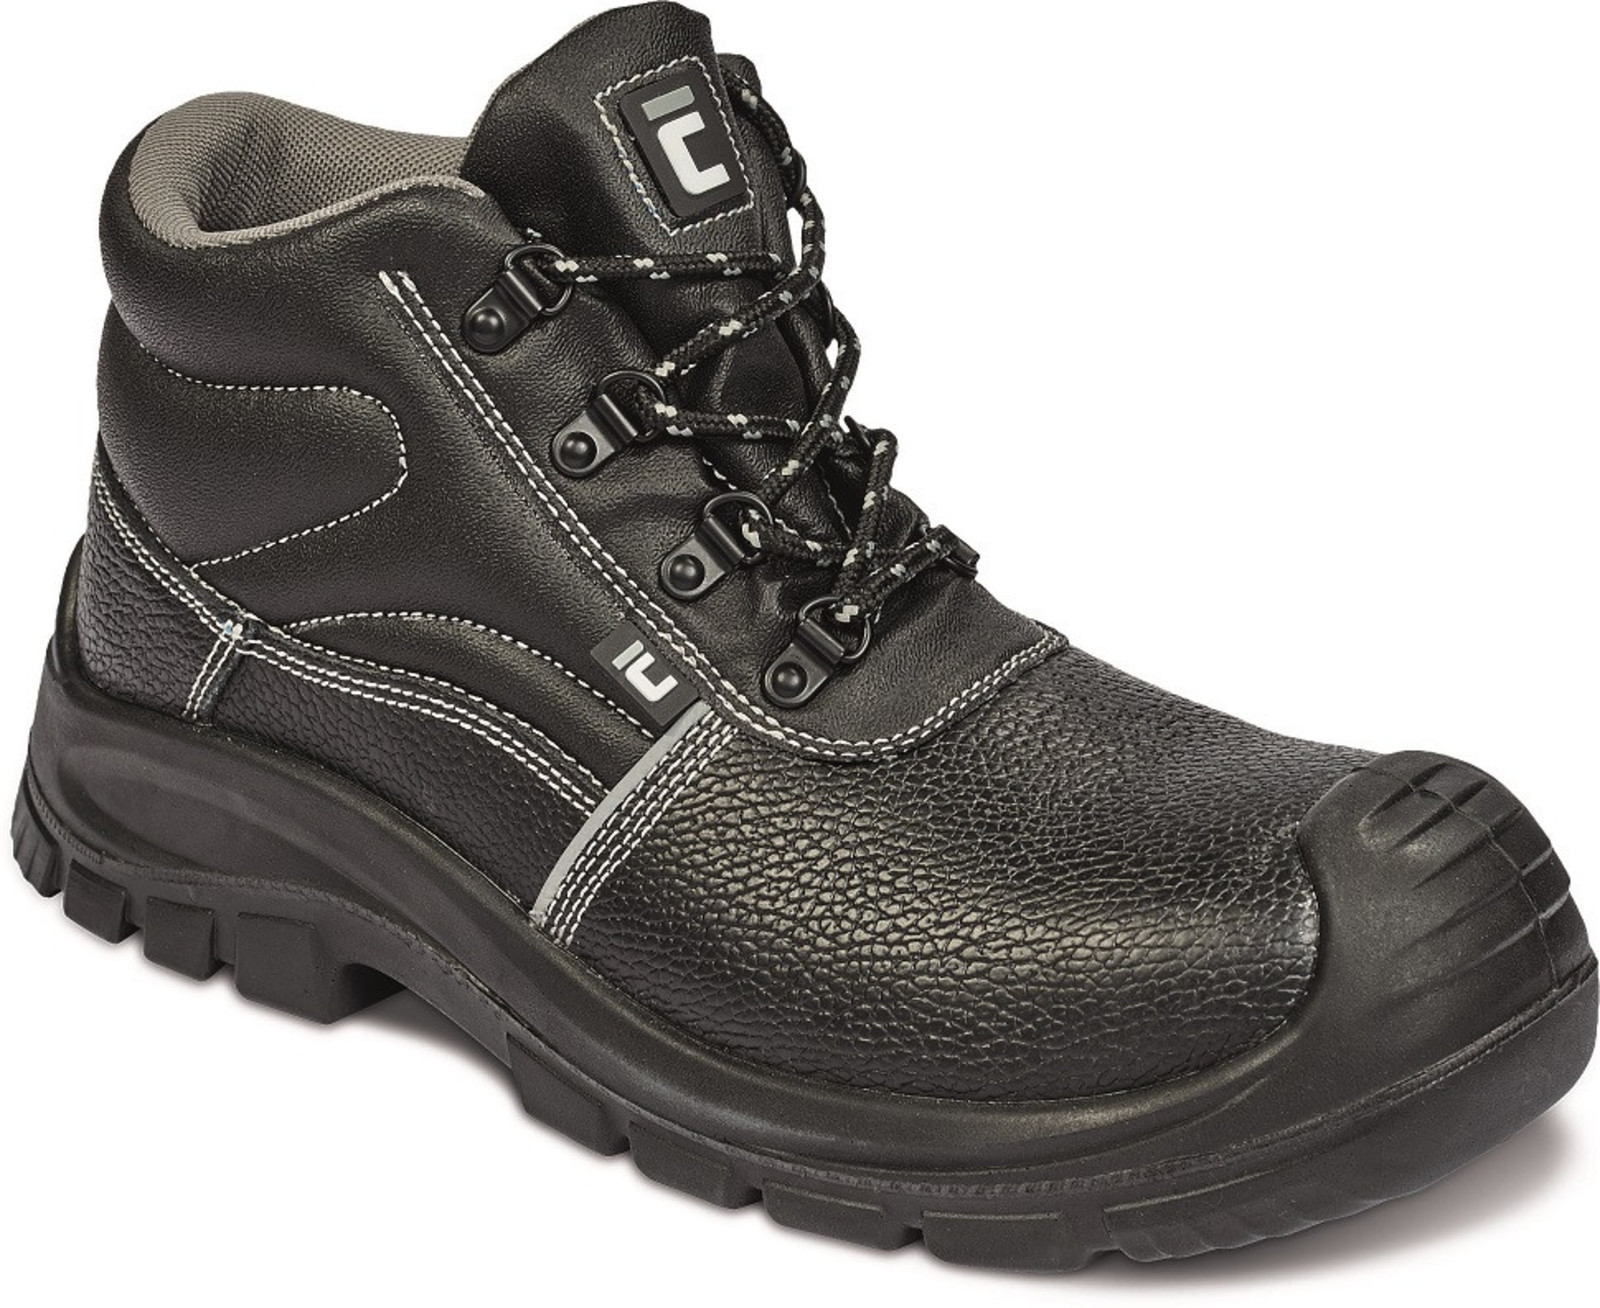 Bezpečnostná obuv Raven XT S3 Metal Free - veľkosť: 38, farba: čierna